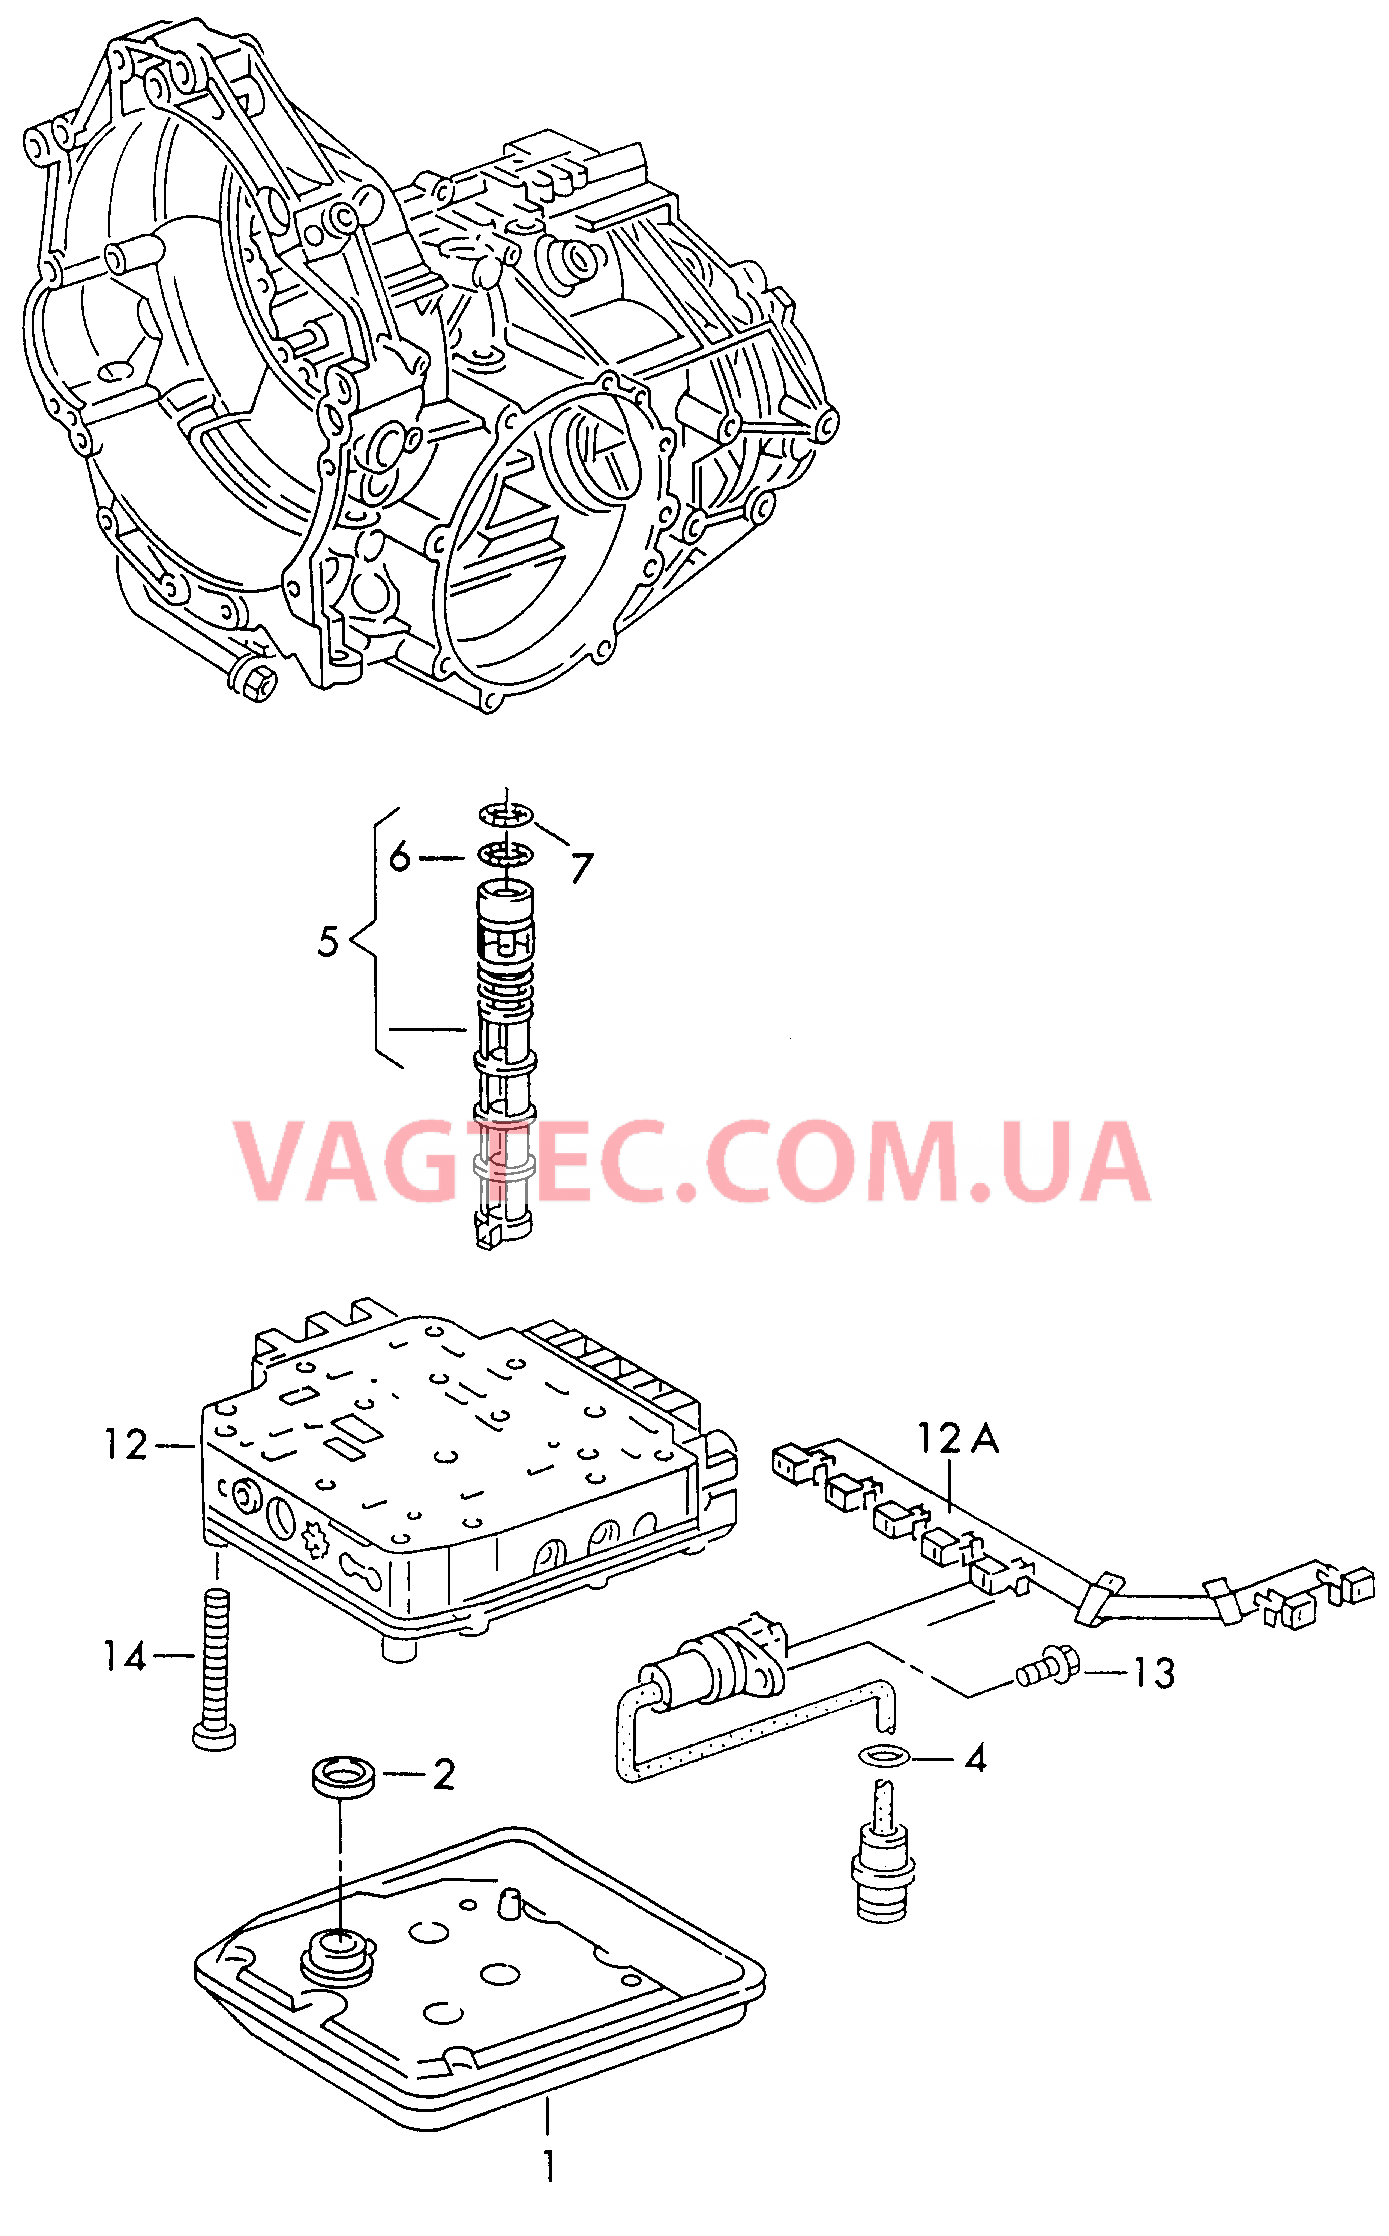 Блок клапанов АКП  AUDI A4 Фильтр масляный, сетчатый для 4-ступенчатой АКП  для AUDI A4 2001